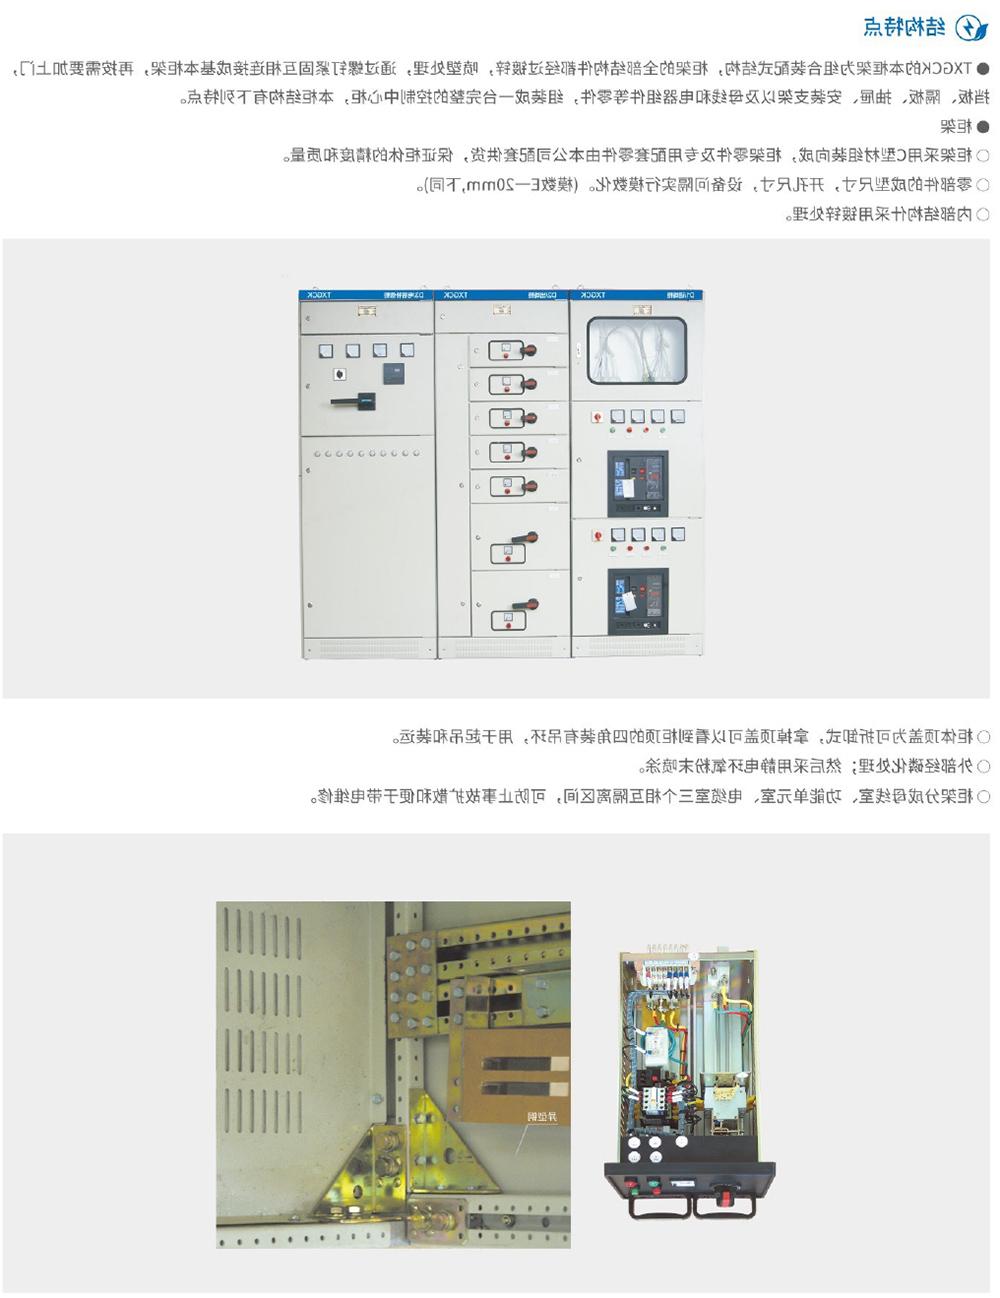 天翔电气产品选型手册-28.jpg